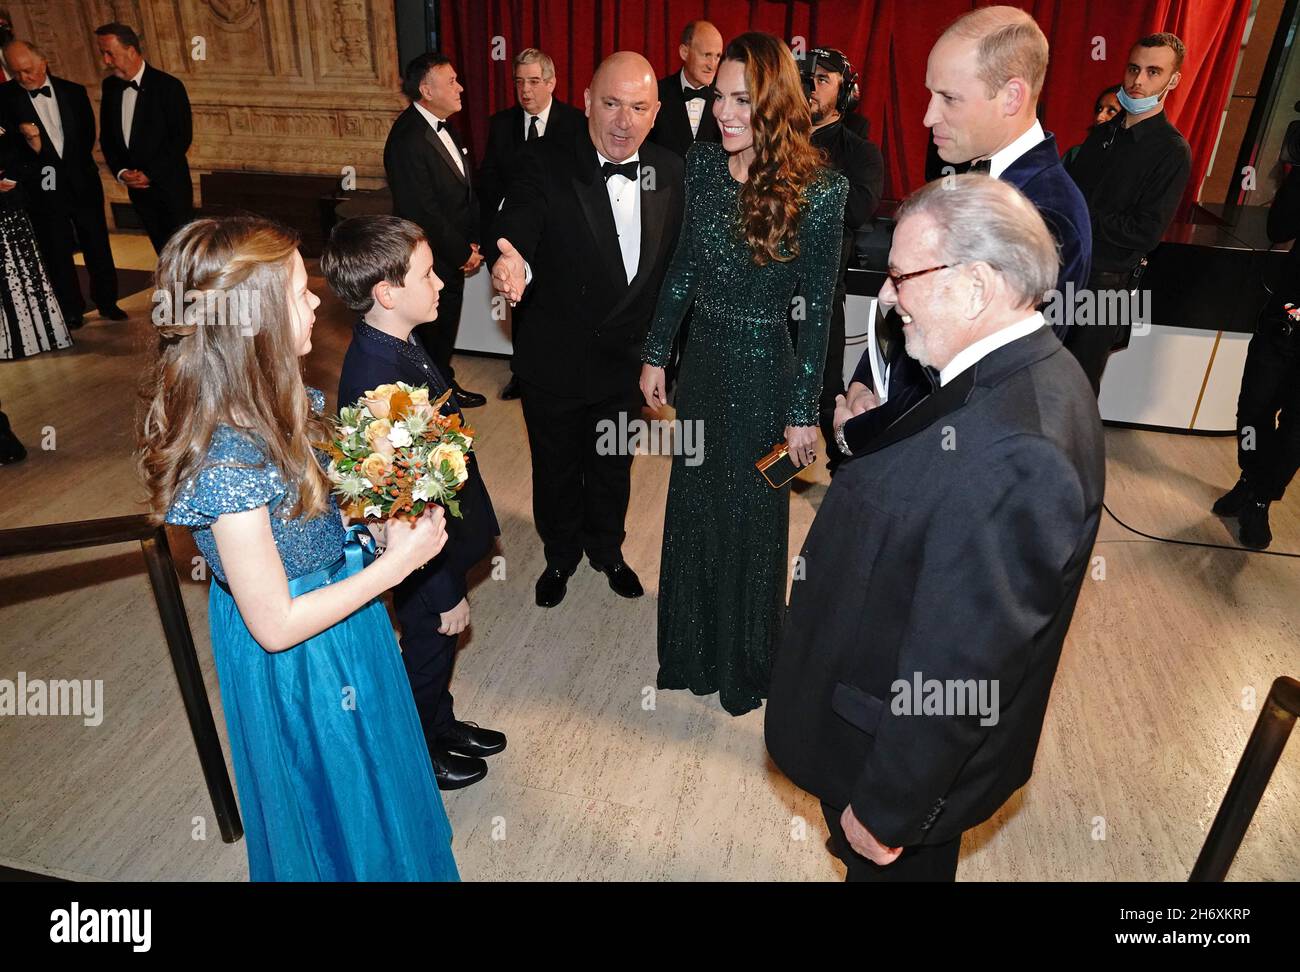 La duchesse de Cambridge est donnée une posy lors de la Royal Variety Performance au Royal Albert Hall, Londres.Date de la photo: Jeudi 18 novembre 2021. Banque D'Images